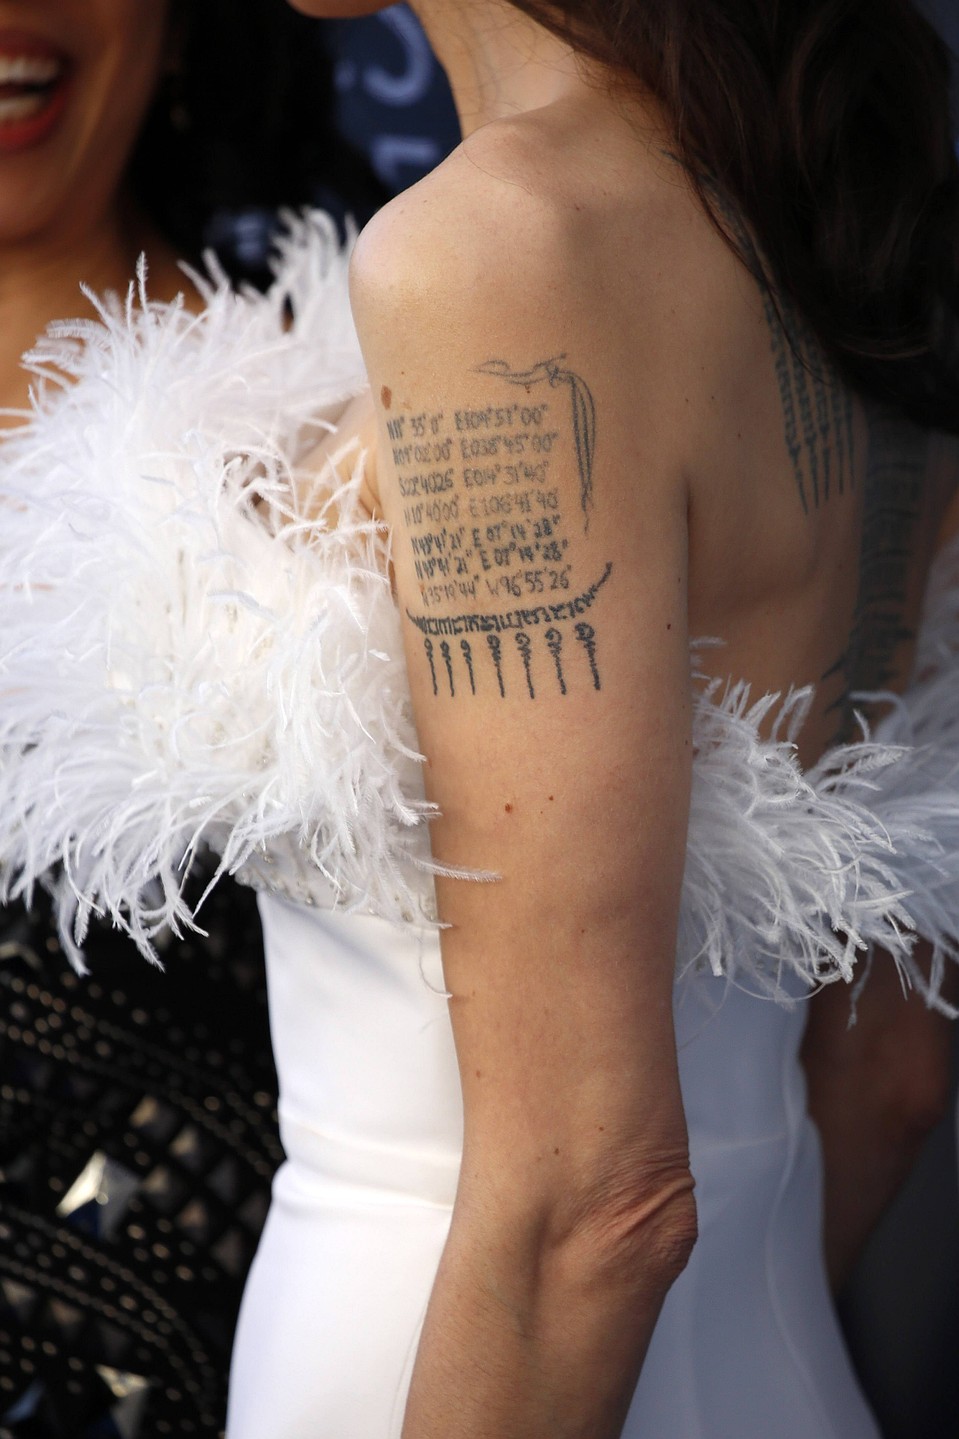 В соцсетях Джоли даже сравнили с «умирающим лебедем» - из-за ее платья с перьями. Фото: GLOBAL LOOK PRESS